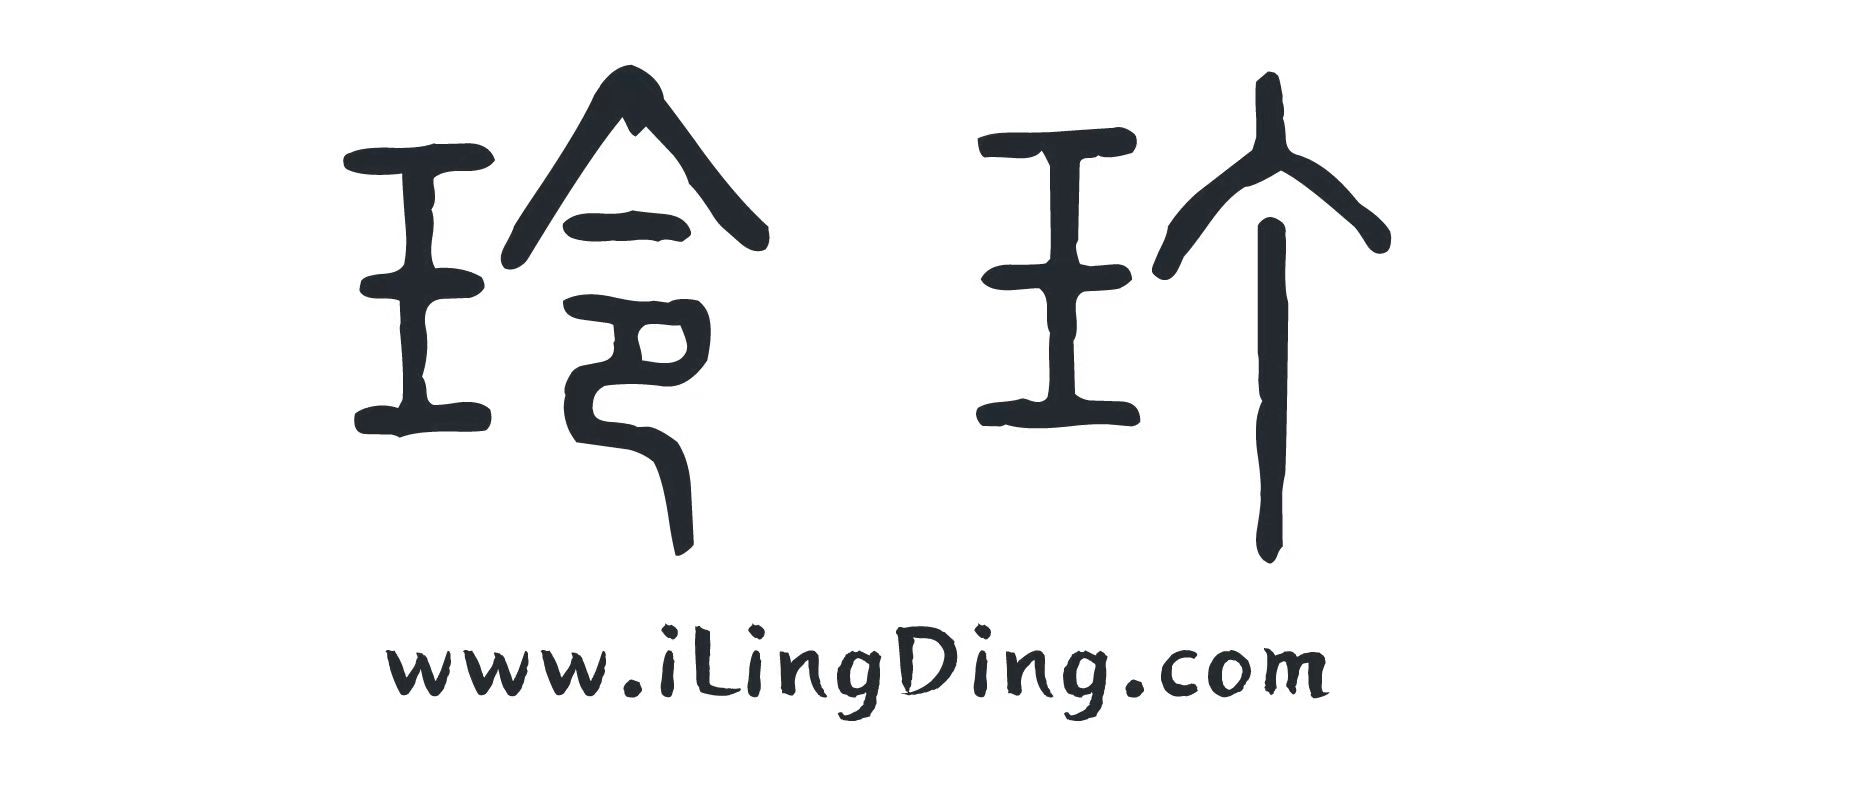 www.ilingding.com